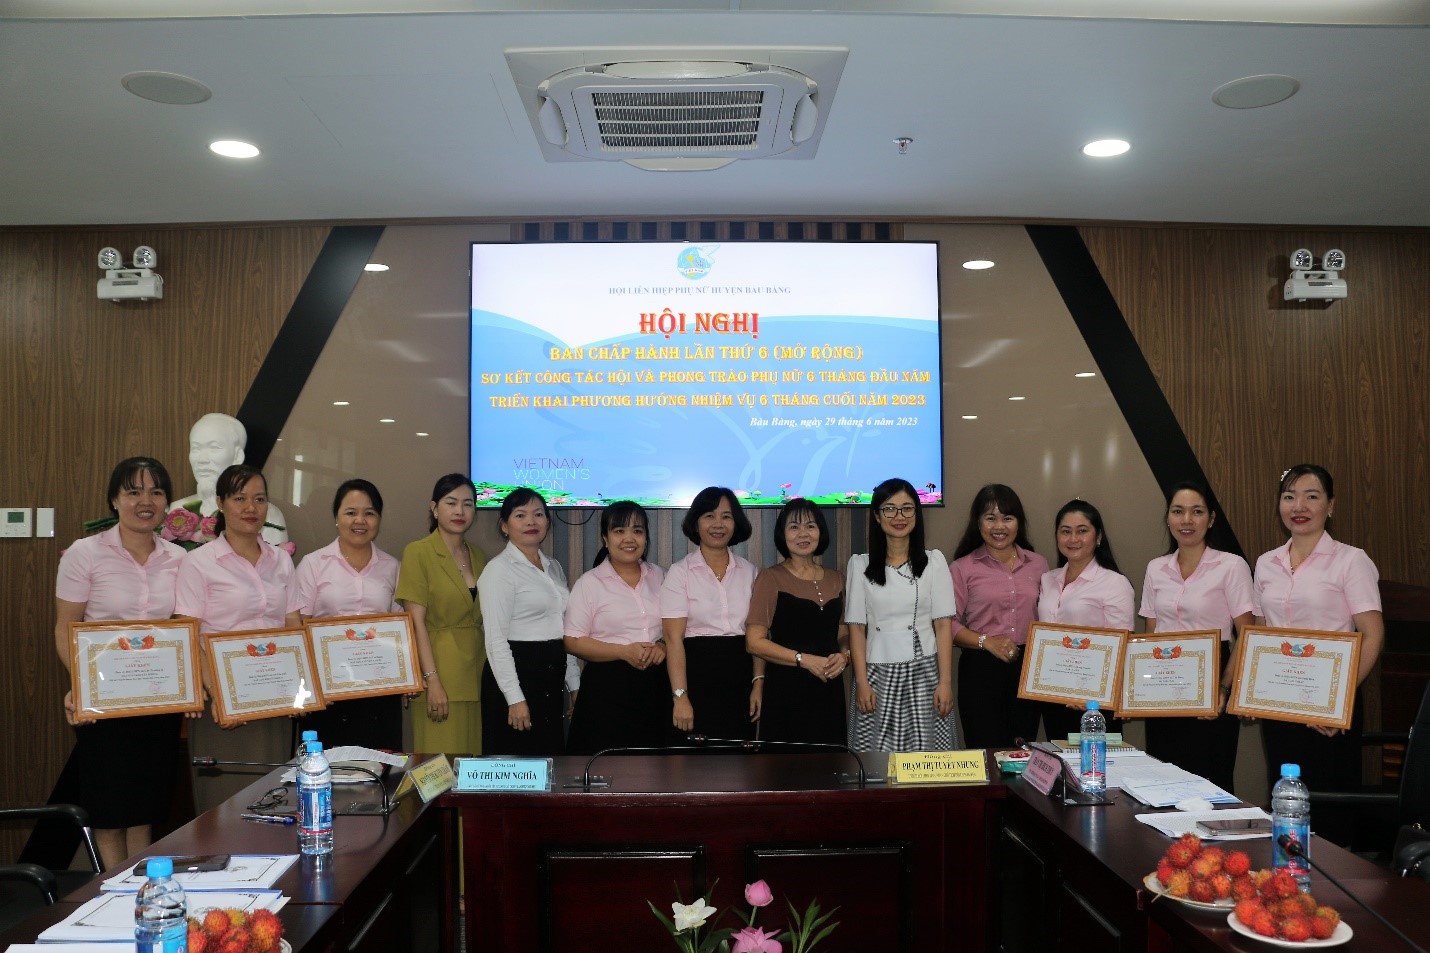 Hội LHPN huyện Bàu Bàng tổ chức Hội nghị Ban chấp hành lần thứ 6 (mở rộng) Sơ kết công tác Hội và phong trào phụ nữ 6 tháng đầu năm, triển khai nhiệm vụ 6 tháng cuối năm 2023.